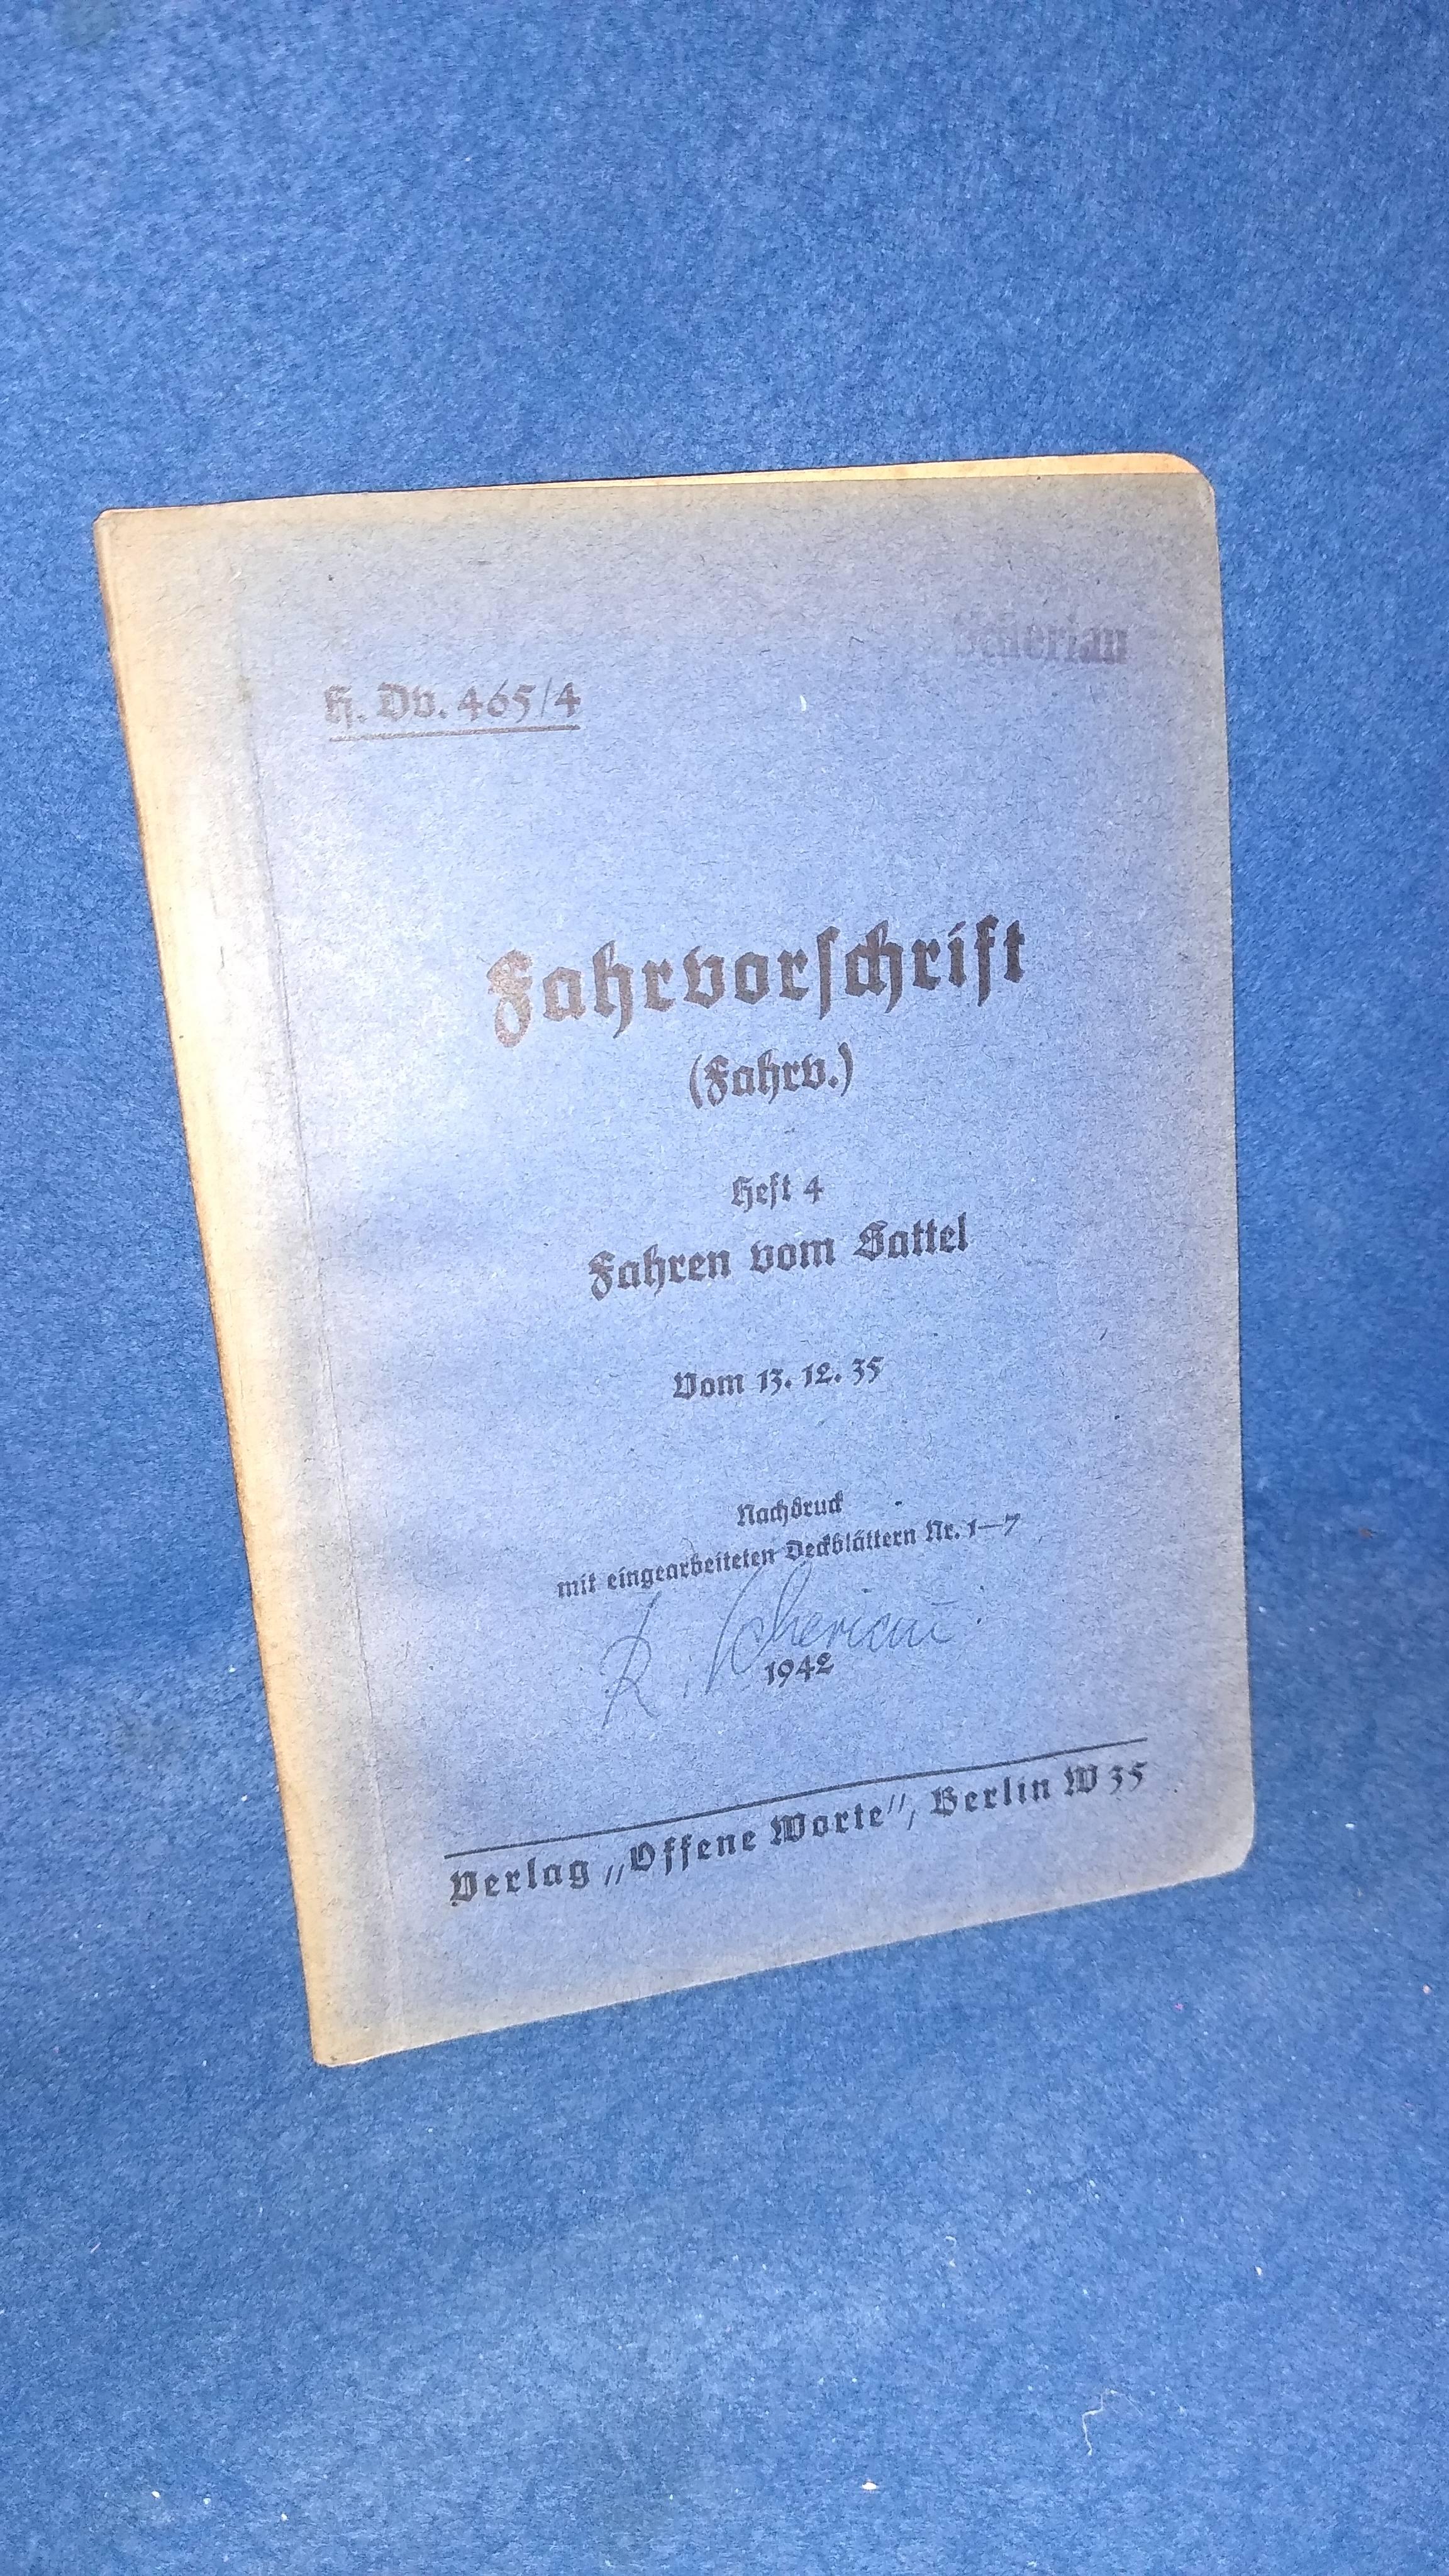 Fahrvorschrift (Fahrv.). Heft 4 - Fahren vom Sattel. Seltenes Orginal-Exemplar von 1942!